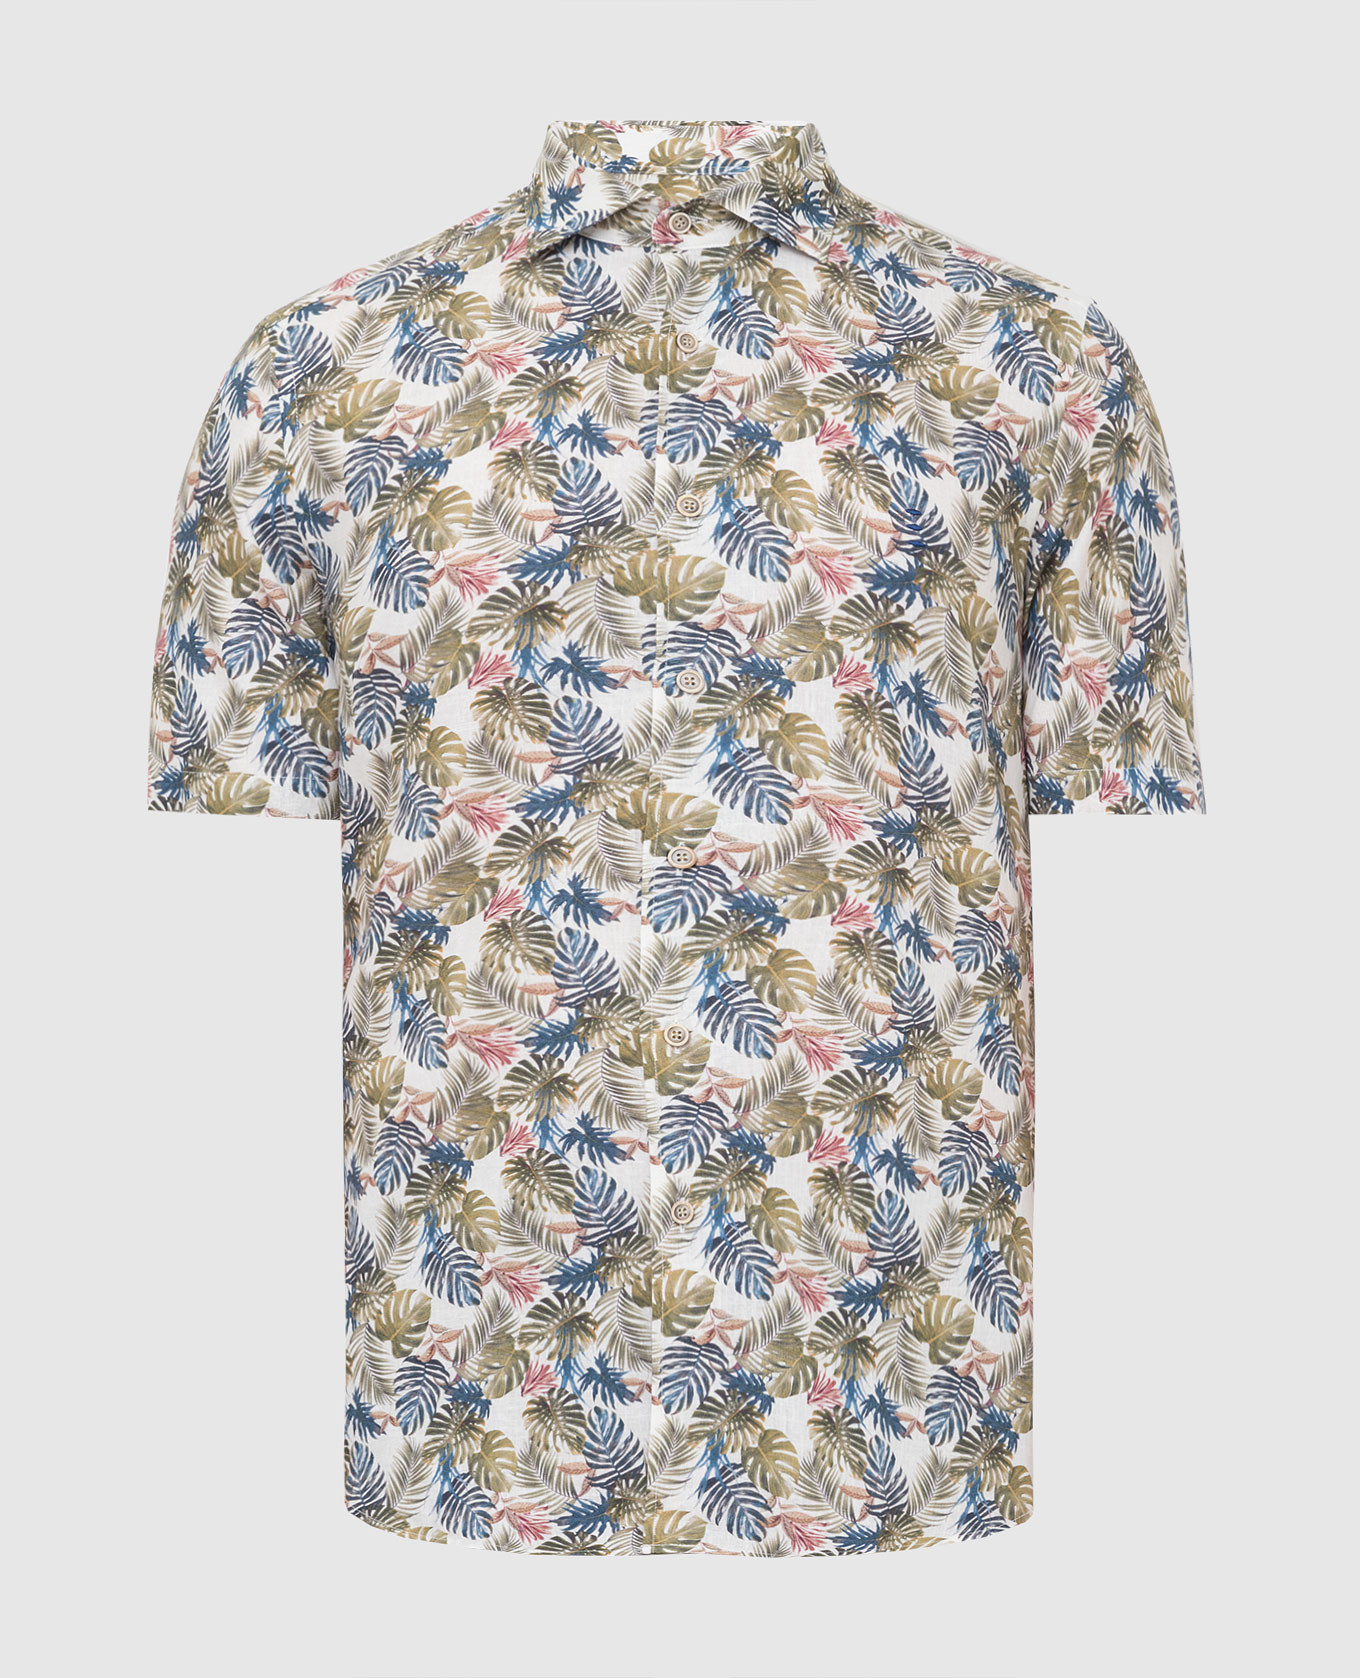 Florentino - Hawaiian print shirt 121748110810 buy at Symbol